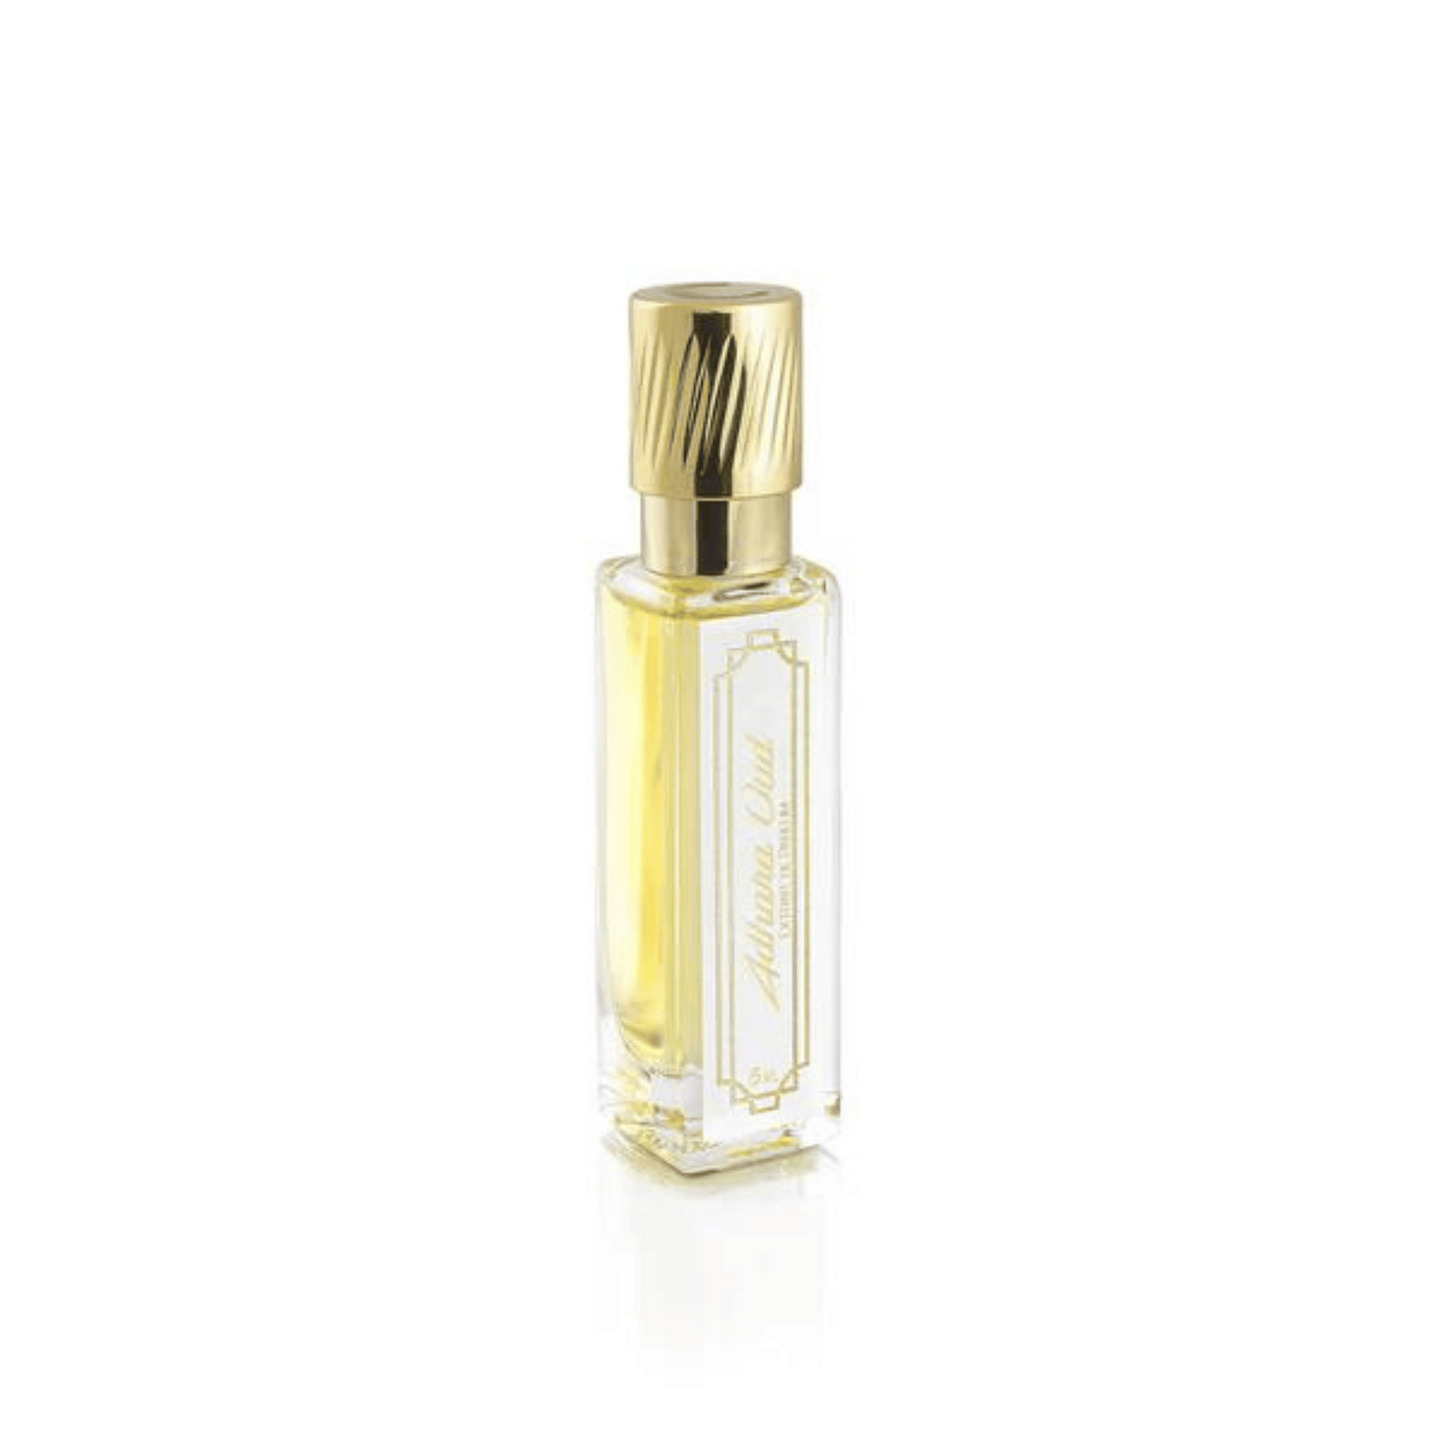 Primary Image of Adhara Oud Extrait de Parfum